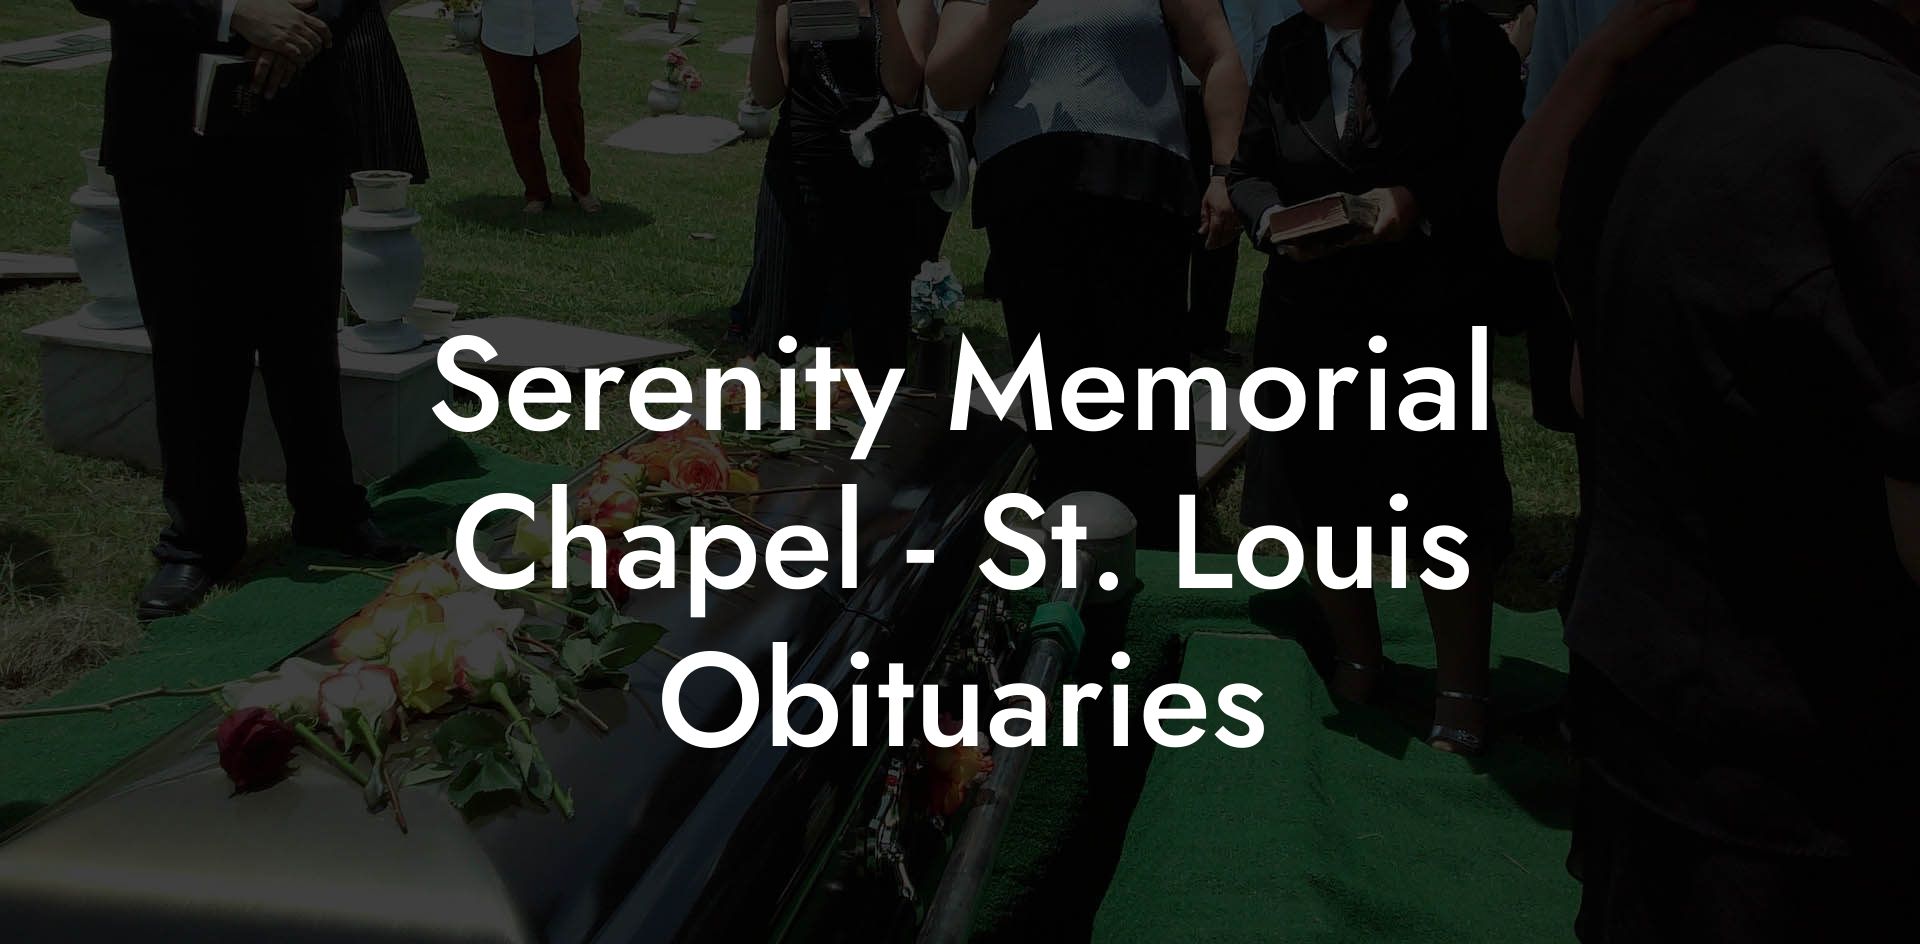 Serenity Memorial Chapel - St. Louis Obituaries